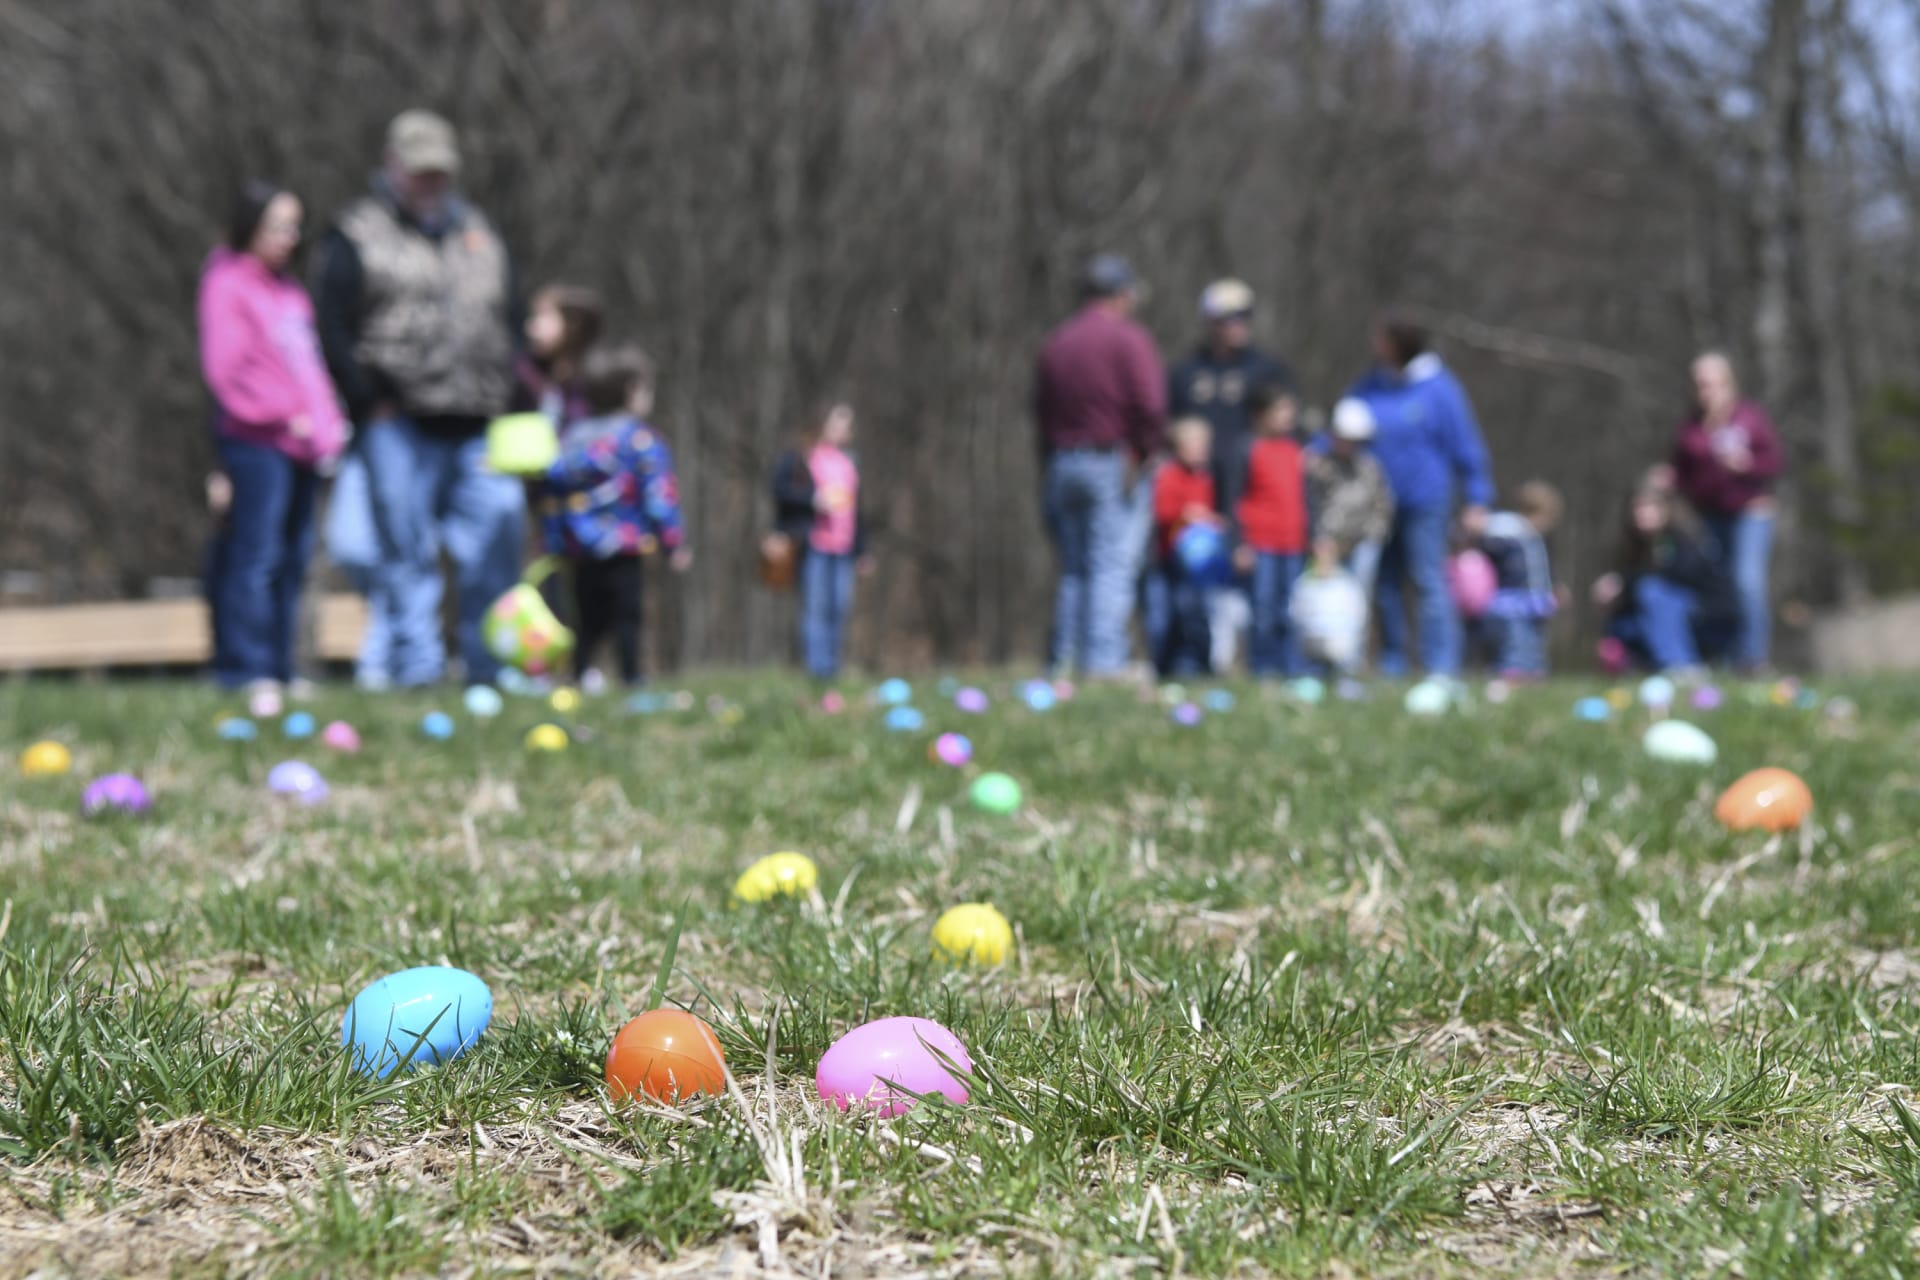 Američané slaví Velikonoce hlavně o víkendu, kdy se pořádají Easter Egg Hunts, neboli lovy na vajíčka. Hry se účastní hlavně děti, kterým rodiče schovávají v trávě čokoládová nebo umělohmotná vajíčka naplněná bonbony a drobnými hračkami.